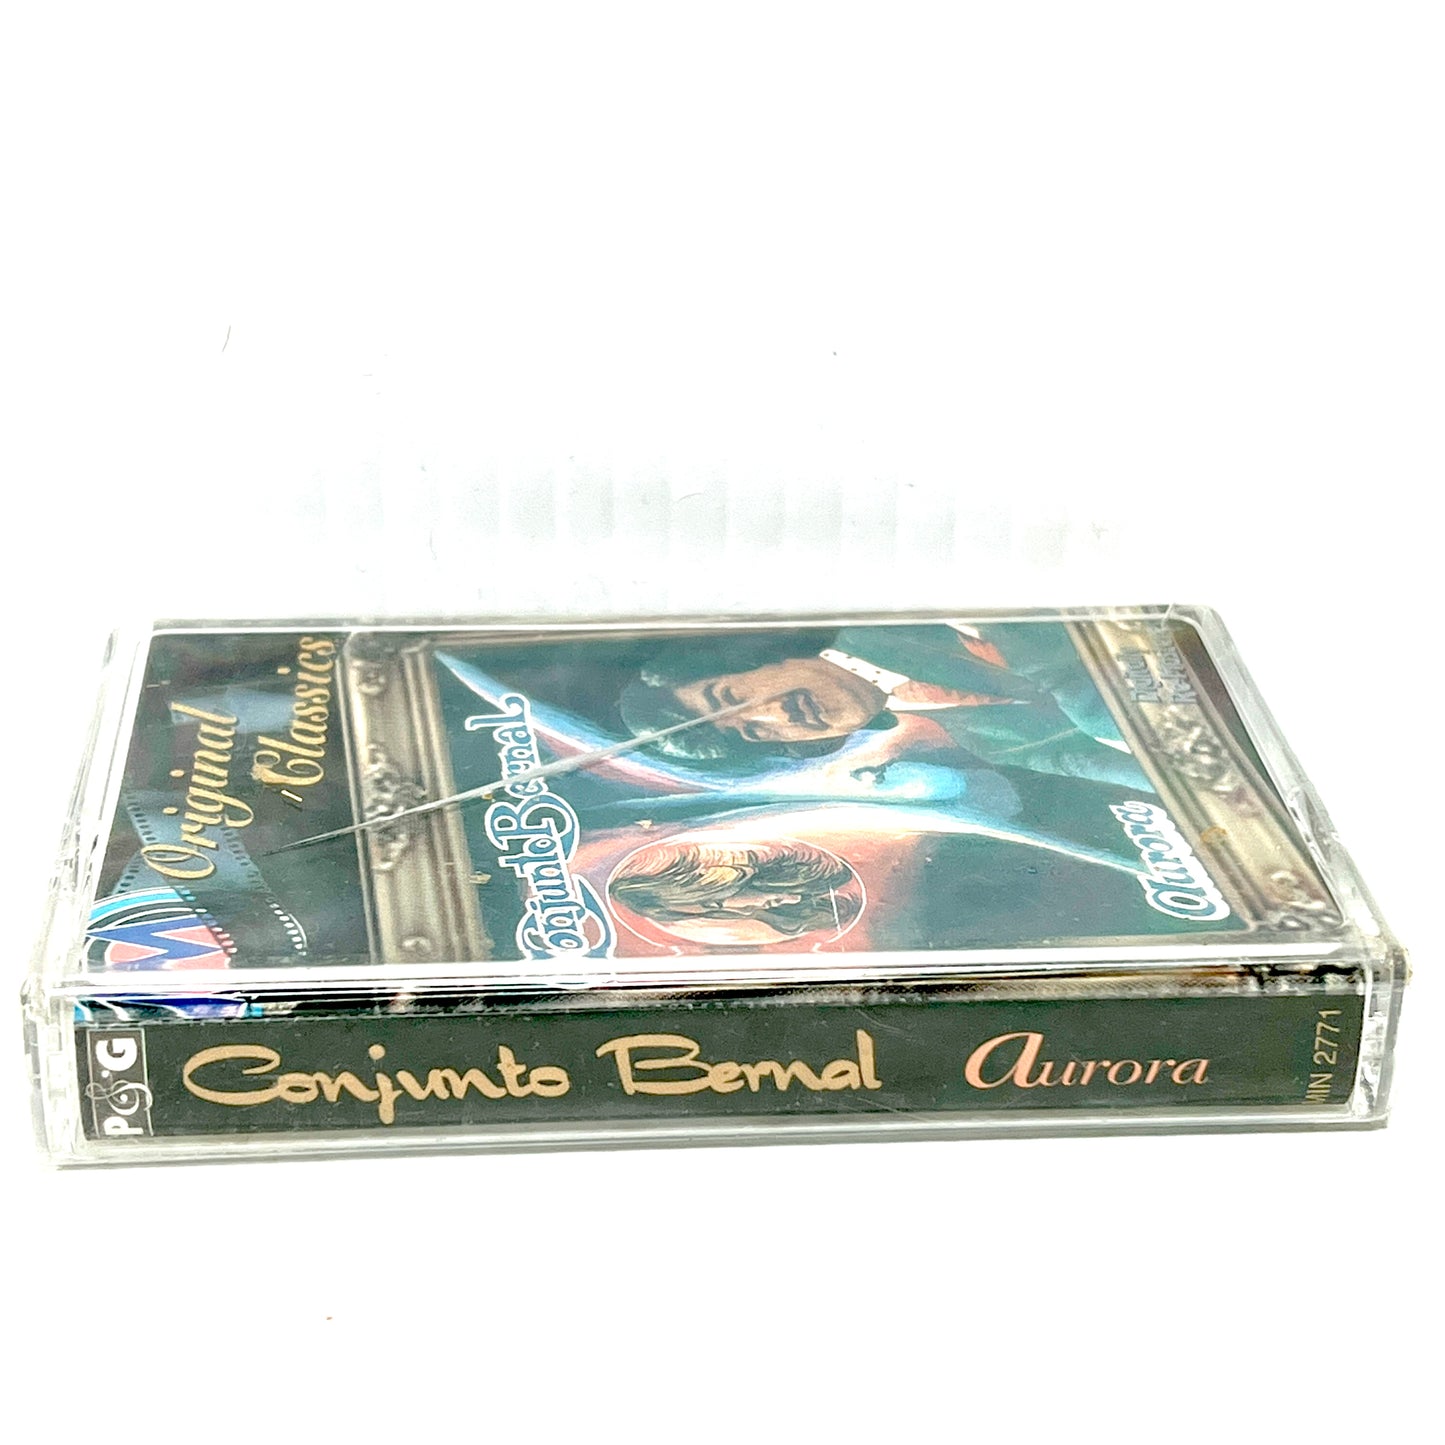 Conjunto Bernal - Aurora (Cassette)